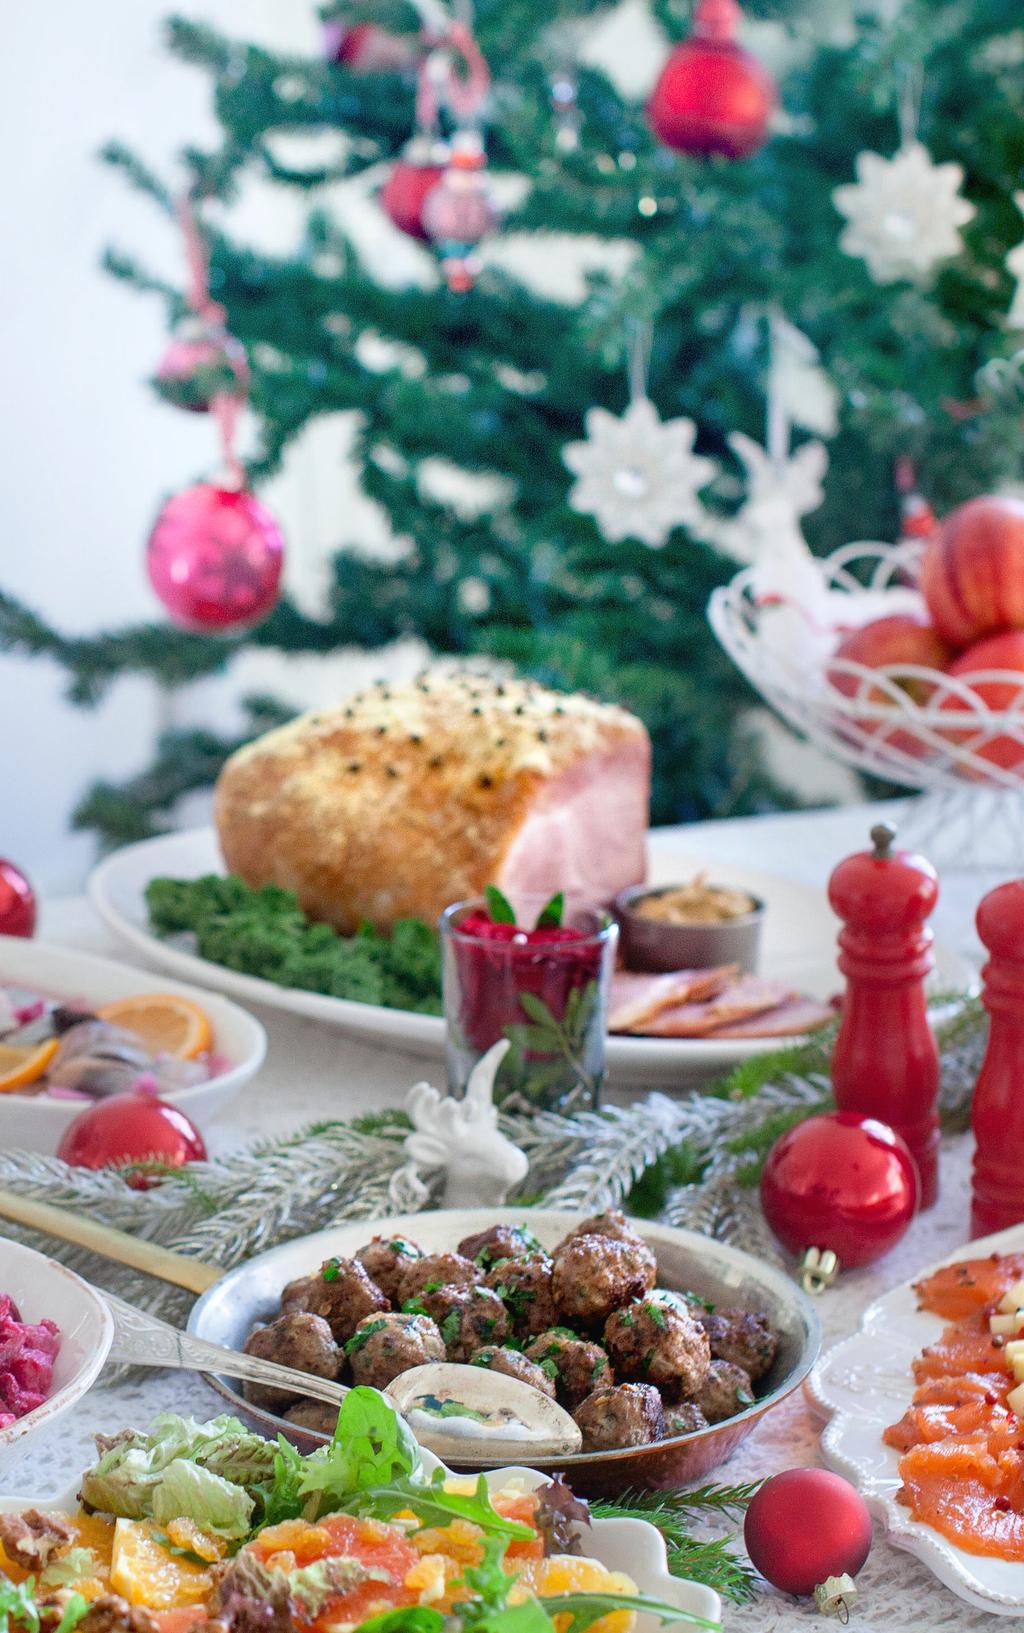 10 Julsortiment Jultallrik med småvarmt...179:njut av vår traditionella jultallrik med småvarmt under lunchen. Inlagd sill... Senapssill... Skivad kall potatis... Gravad lax med gravlaxsås.